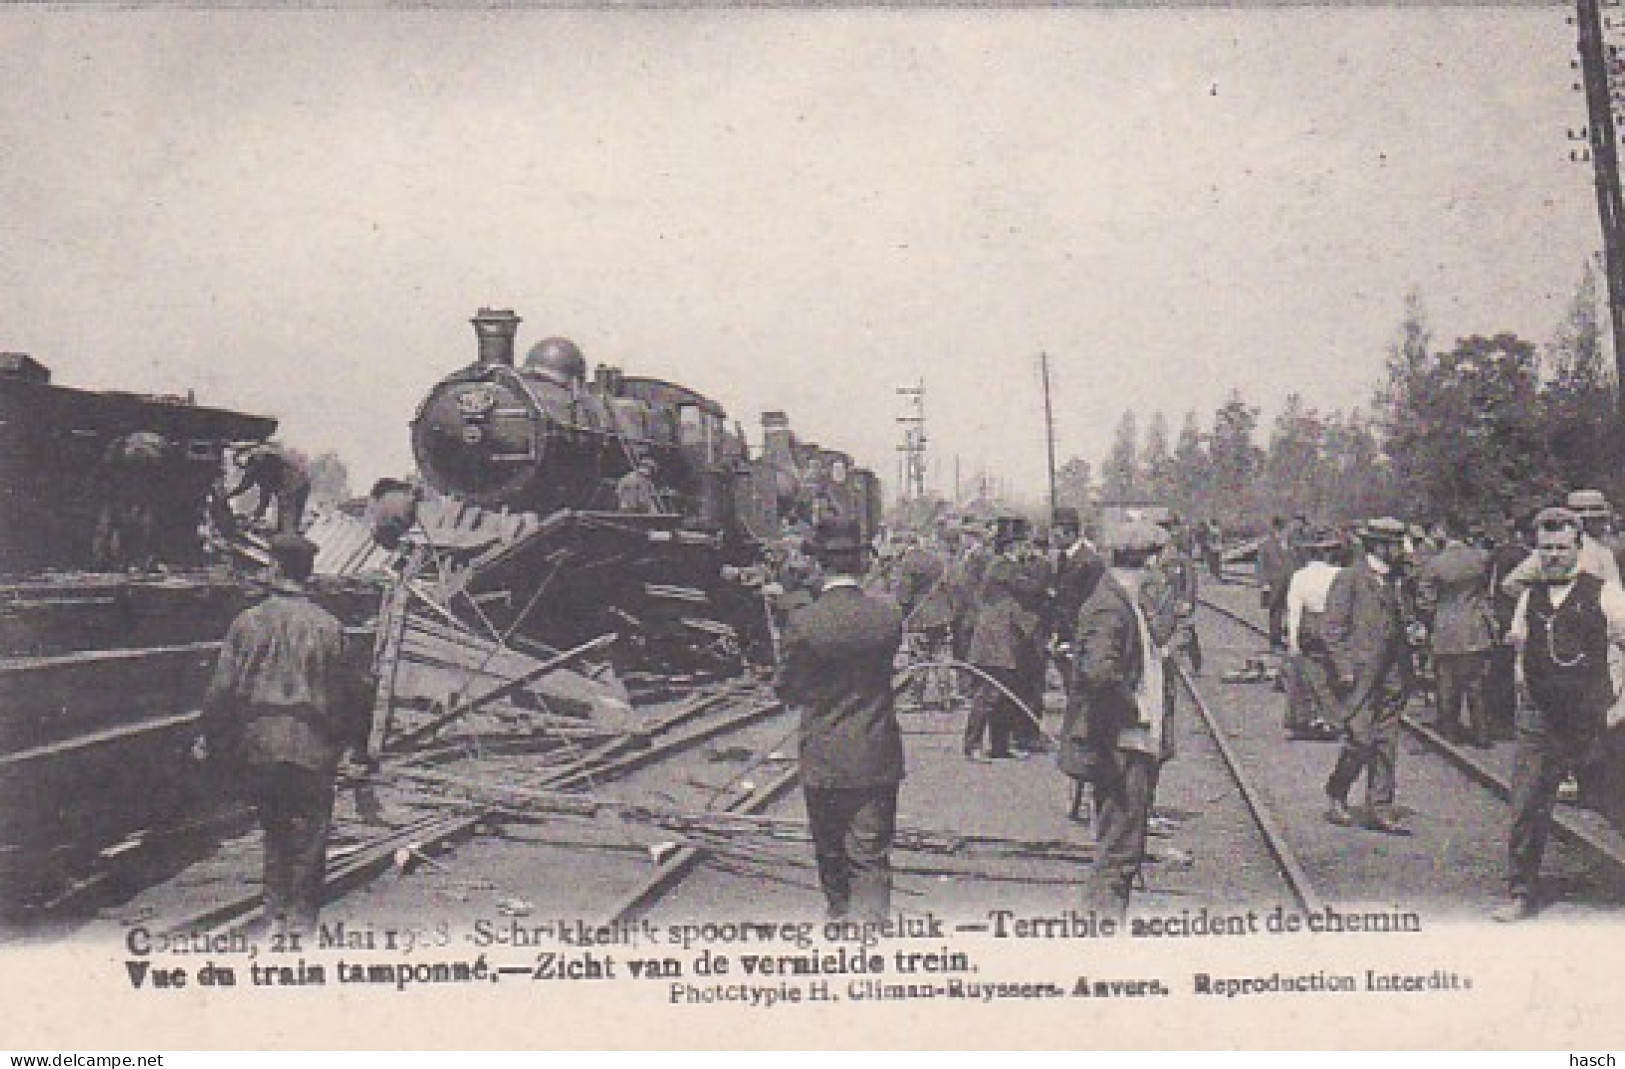 3726	40	Contich, Treinongeval 21 Mei 1908 Schrikkelijk Spoorweg Ongeluk – Zicht Van De Vernielde Trein. - Kontich